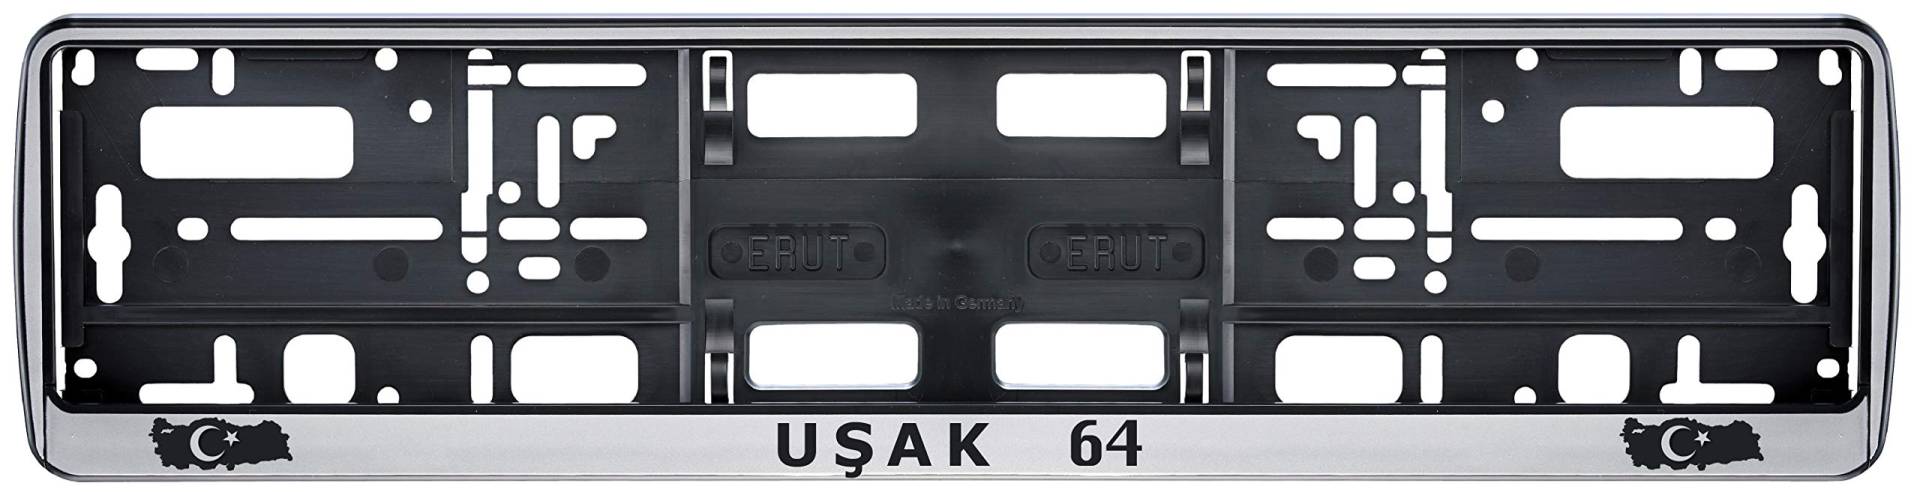 Auto Kennzeichenhalter in der Farbe Silber/Schwarz Nummernschildhalterung Auto, Nummernschildhalter Türkei Flagge 64 Usak 2 Stück von Aina